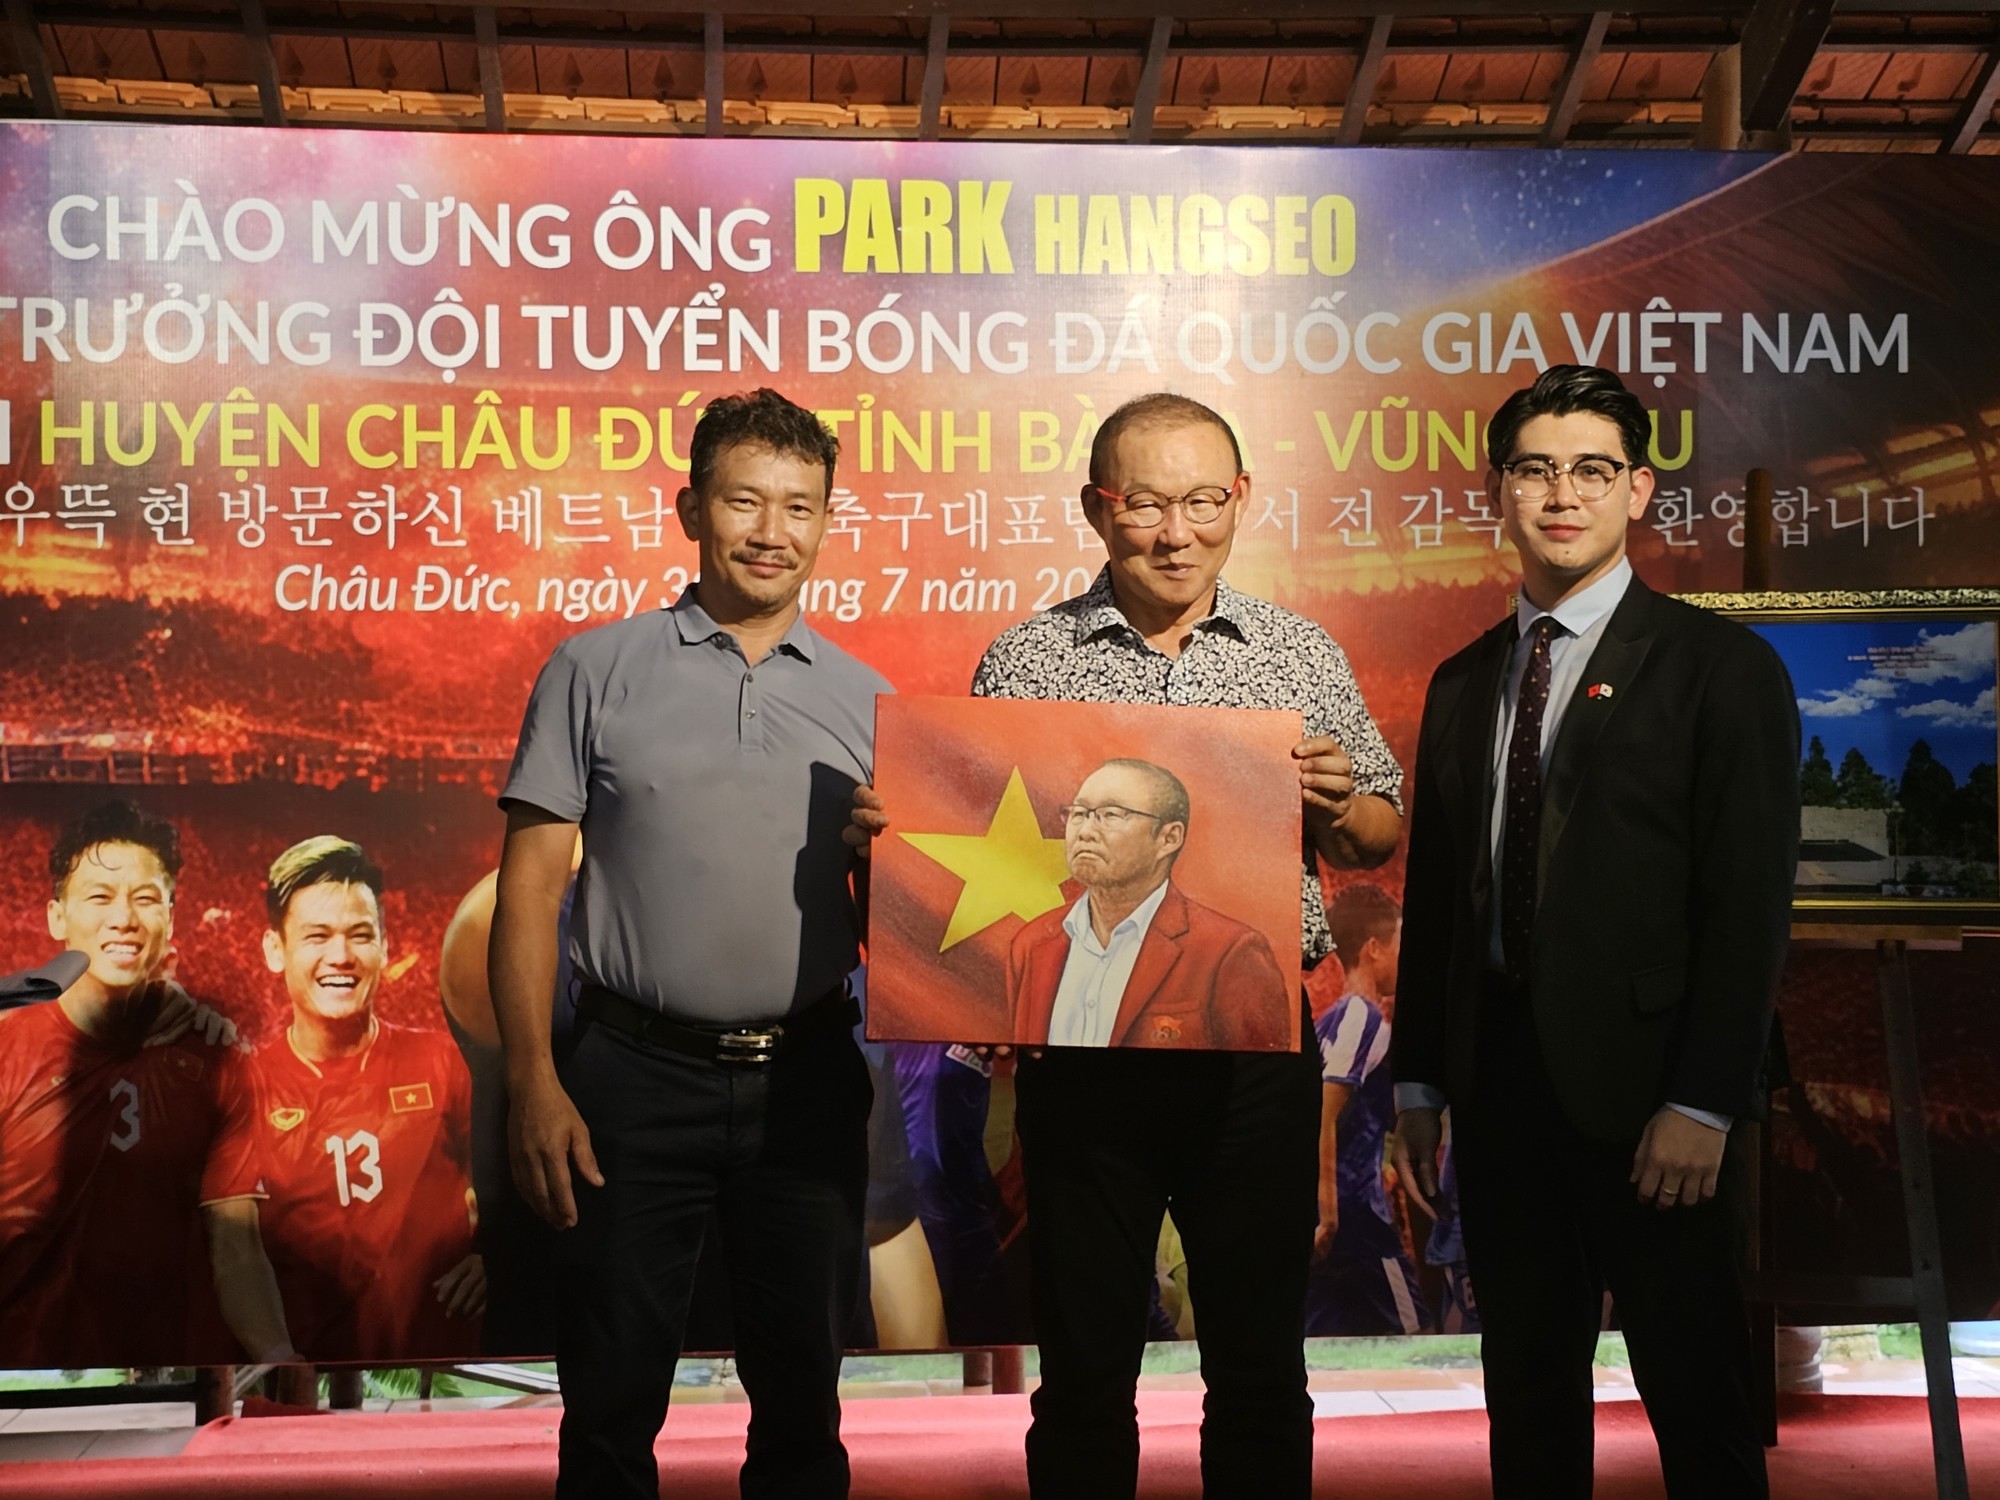 Ông Park gây sốt ở huyện yêu bóng đá tỉnh Bà Rịa – Vũng Tàu - Ảnh 8.